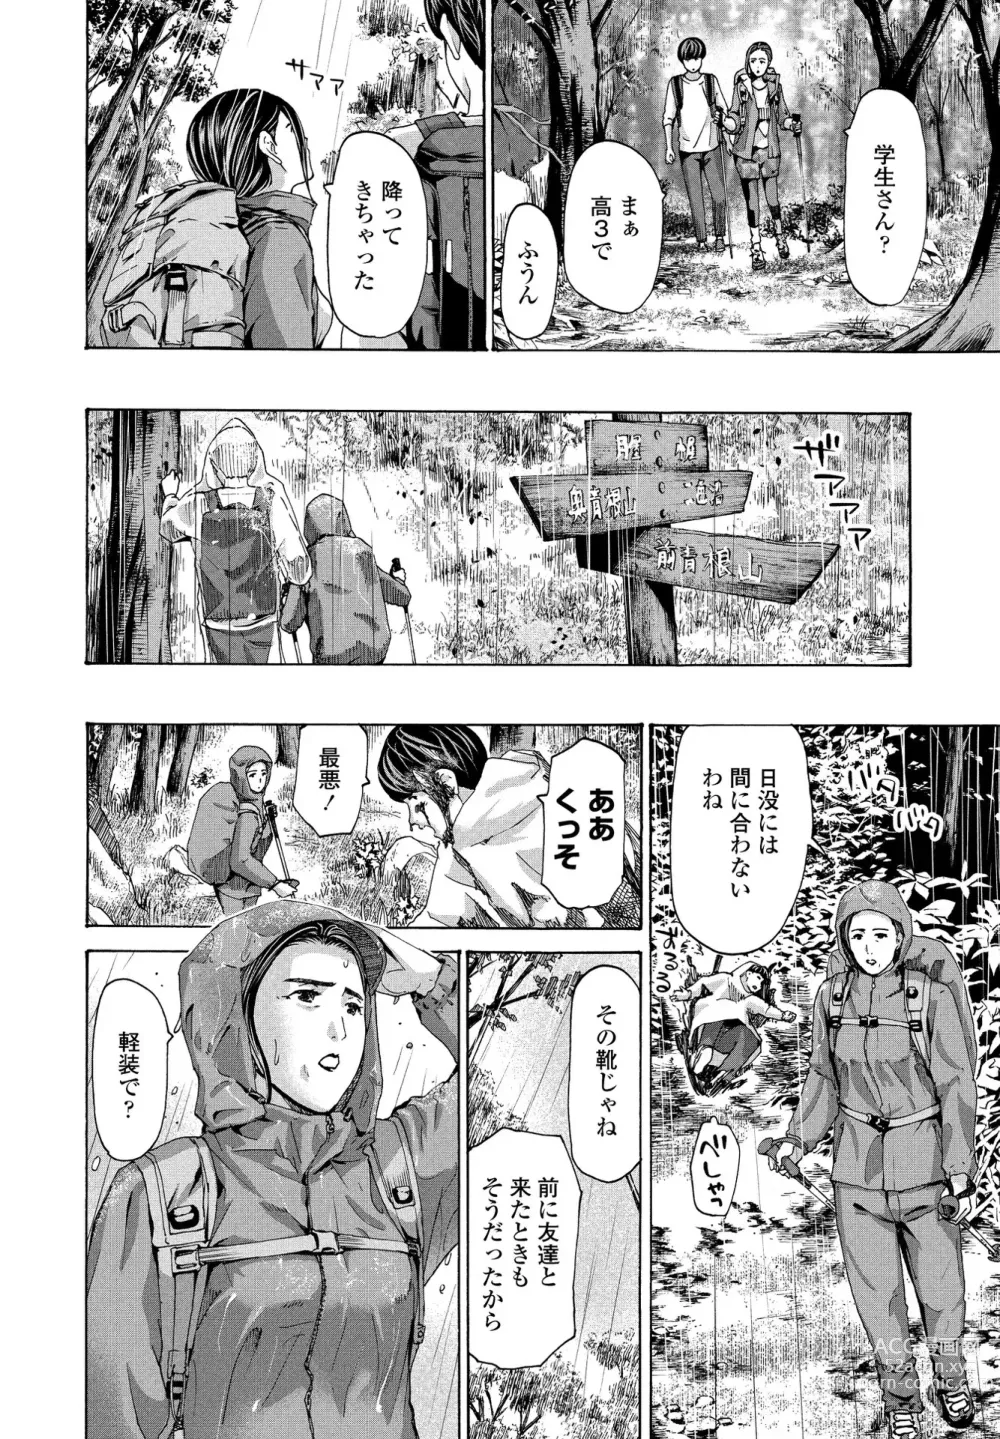 Page 2 of manga Hinangoya nite